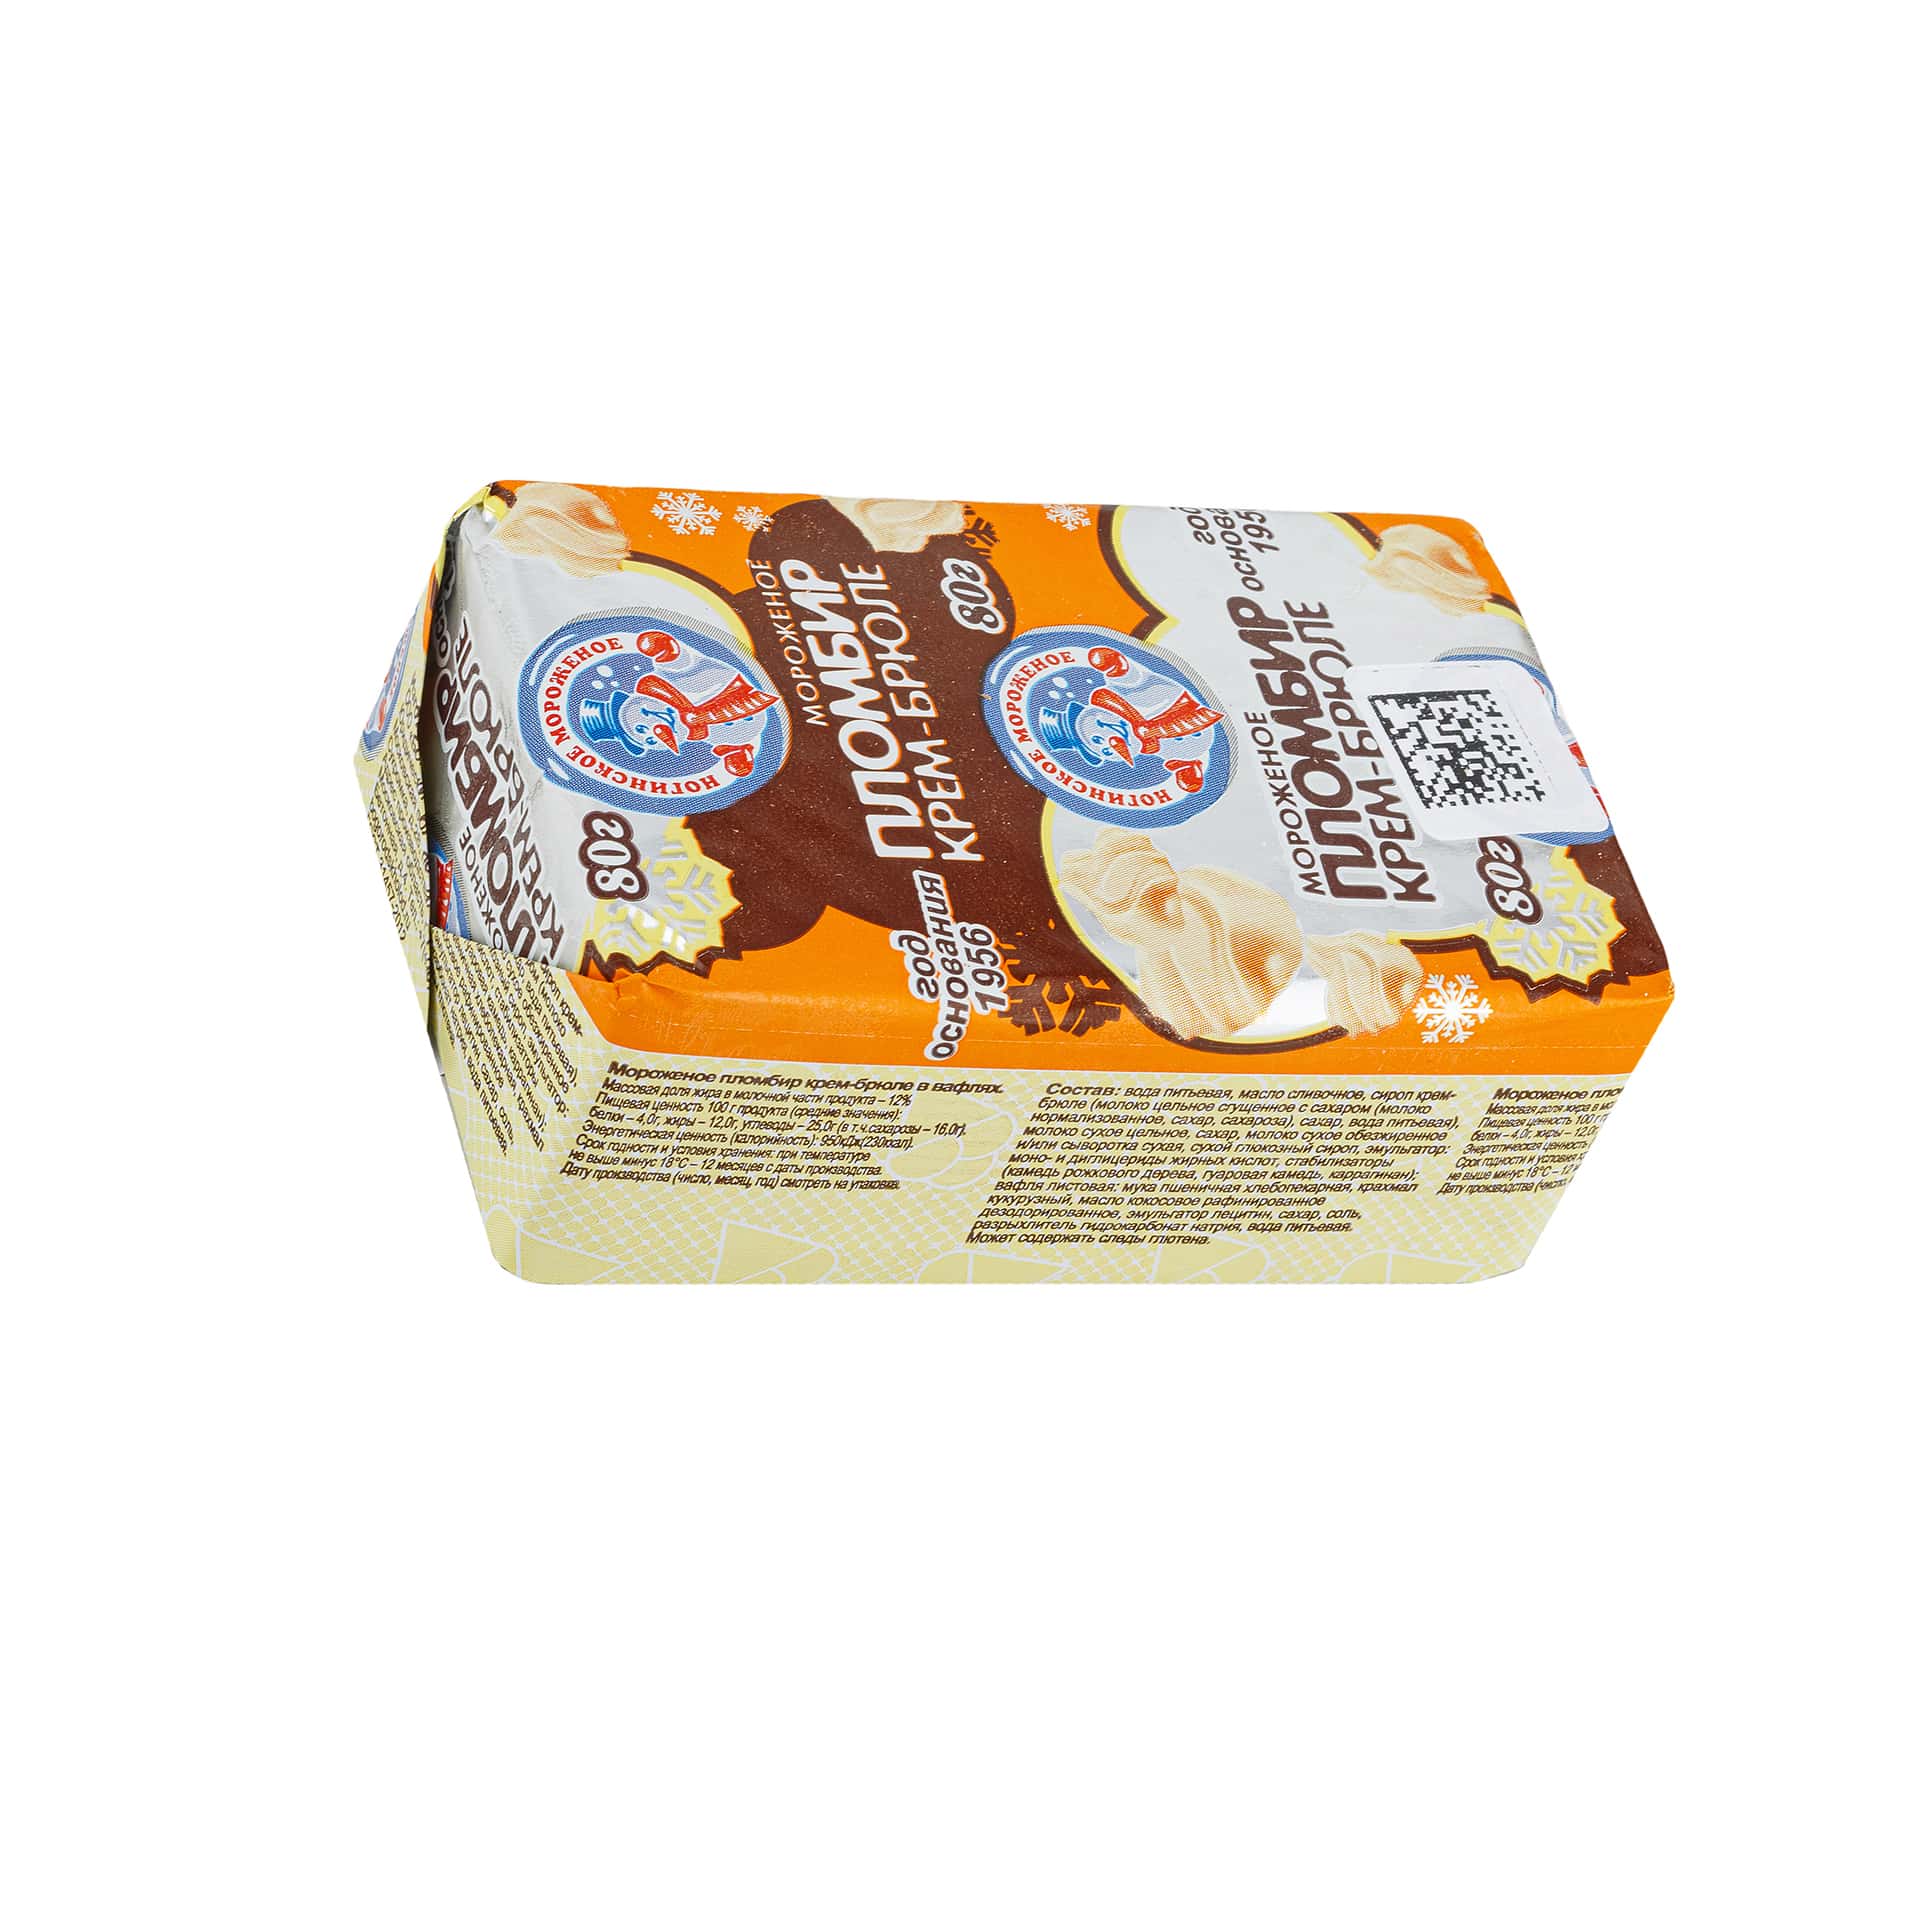 Мороженое пломбир крем-брюле брикет в вафлях Ногинское мороженое 80 г 430LED, общий вид, купить оптом с доставкой по москве и московской области, недорого, низкая цена